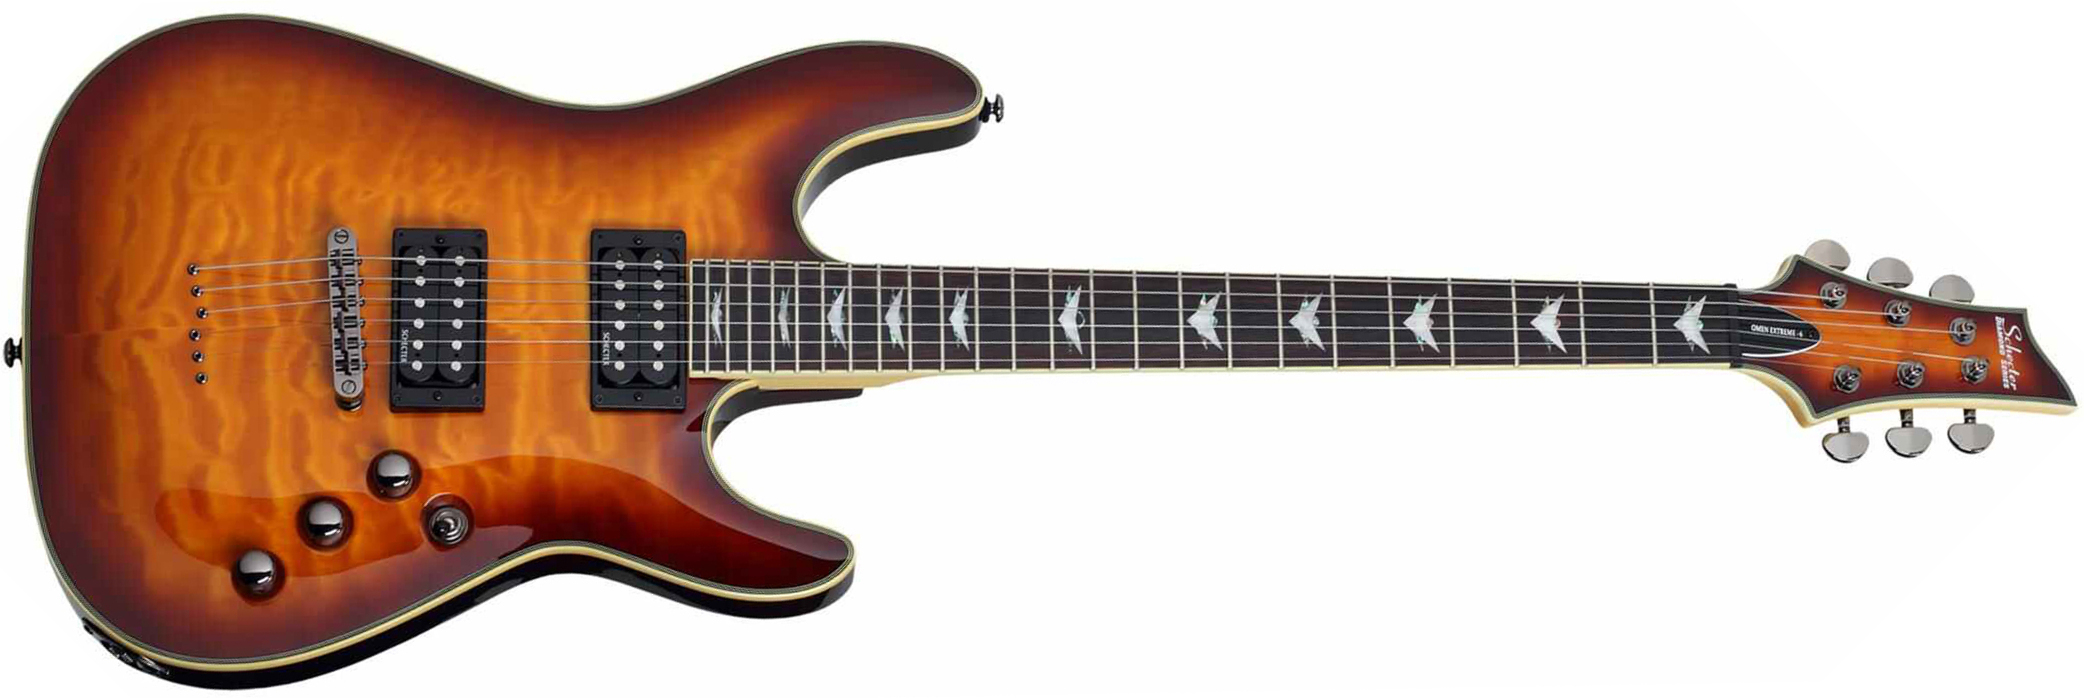 Schecter Omen Extreme-6 2h Ht Rw - Vintage Sunburst - Guitarra eléctrica con forma de str. - Main picture